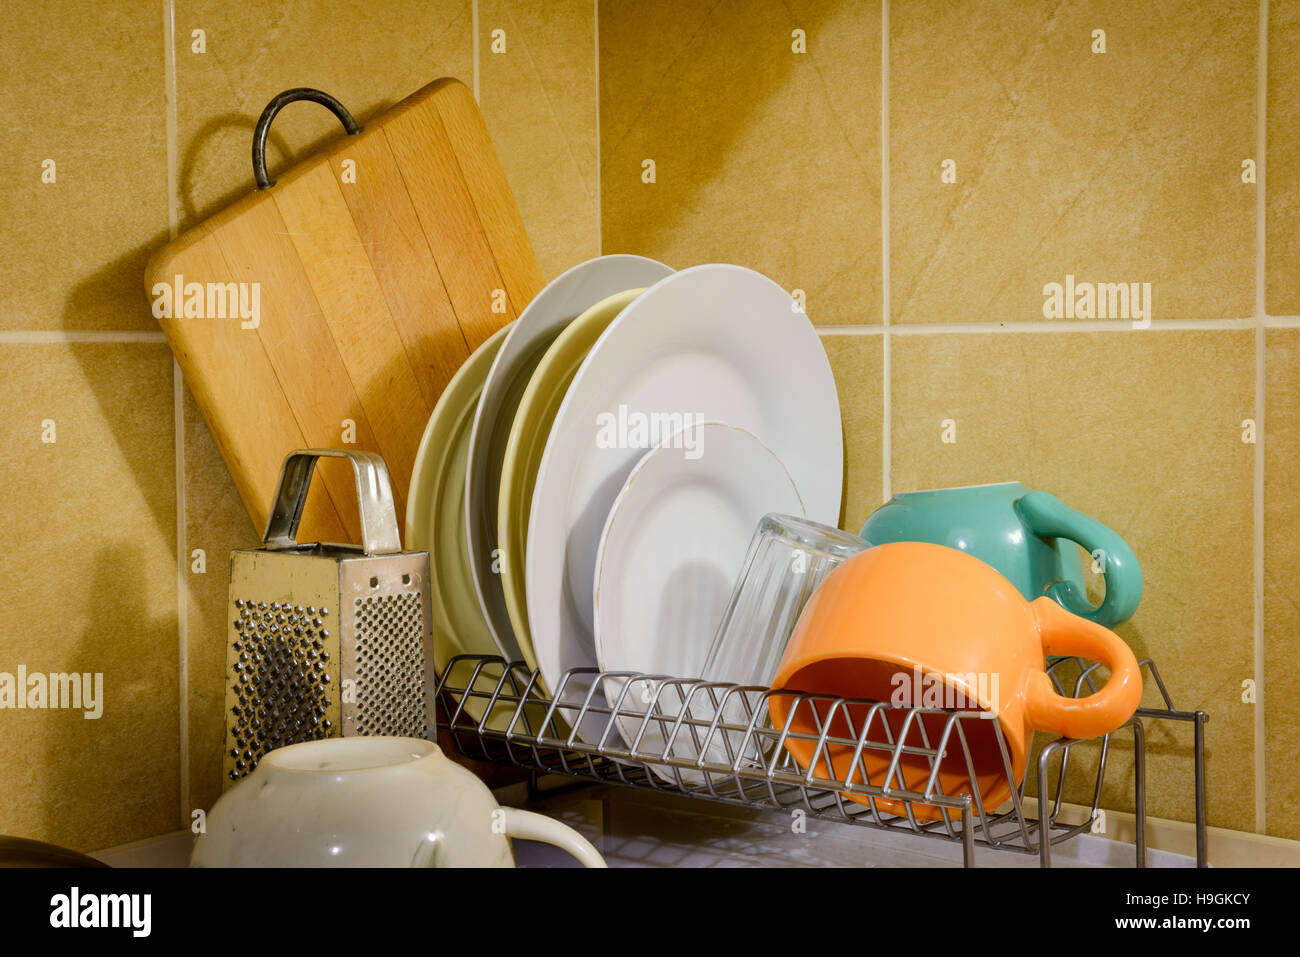 Plats, tasses, verres, assiettes, fourchettes, couteaux et cuillères sont le séchage près de l'évier, après qu'ils ont été lavés dans la cuisine Banque D'Images